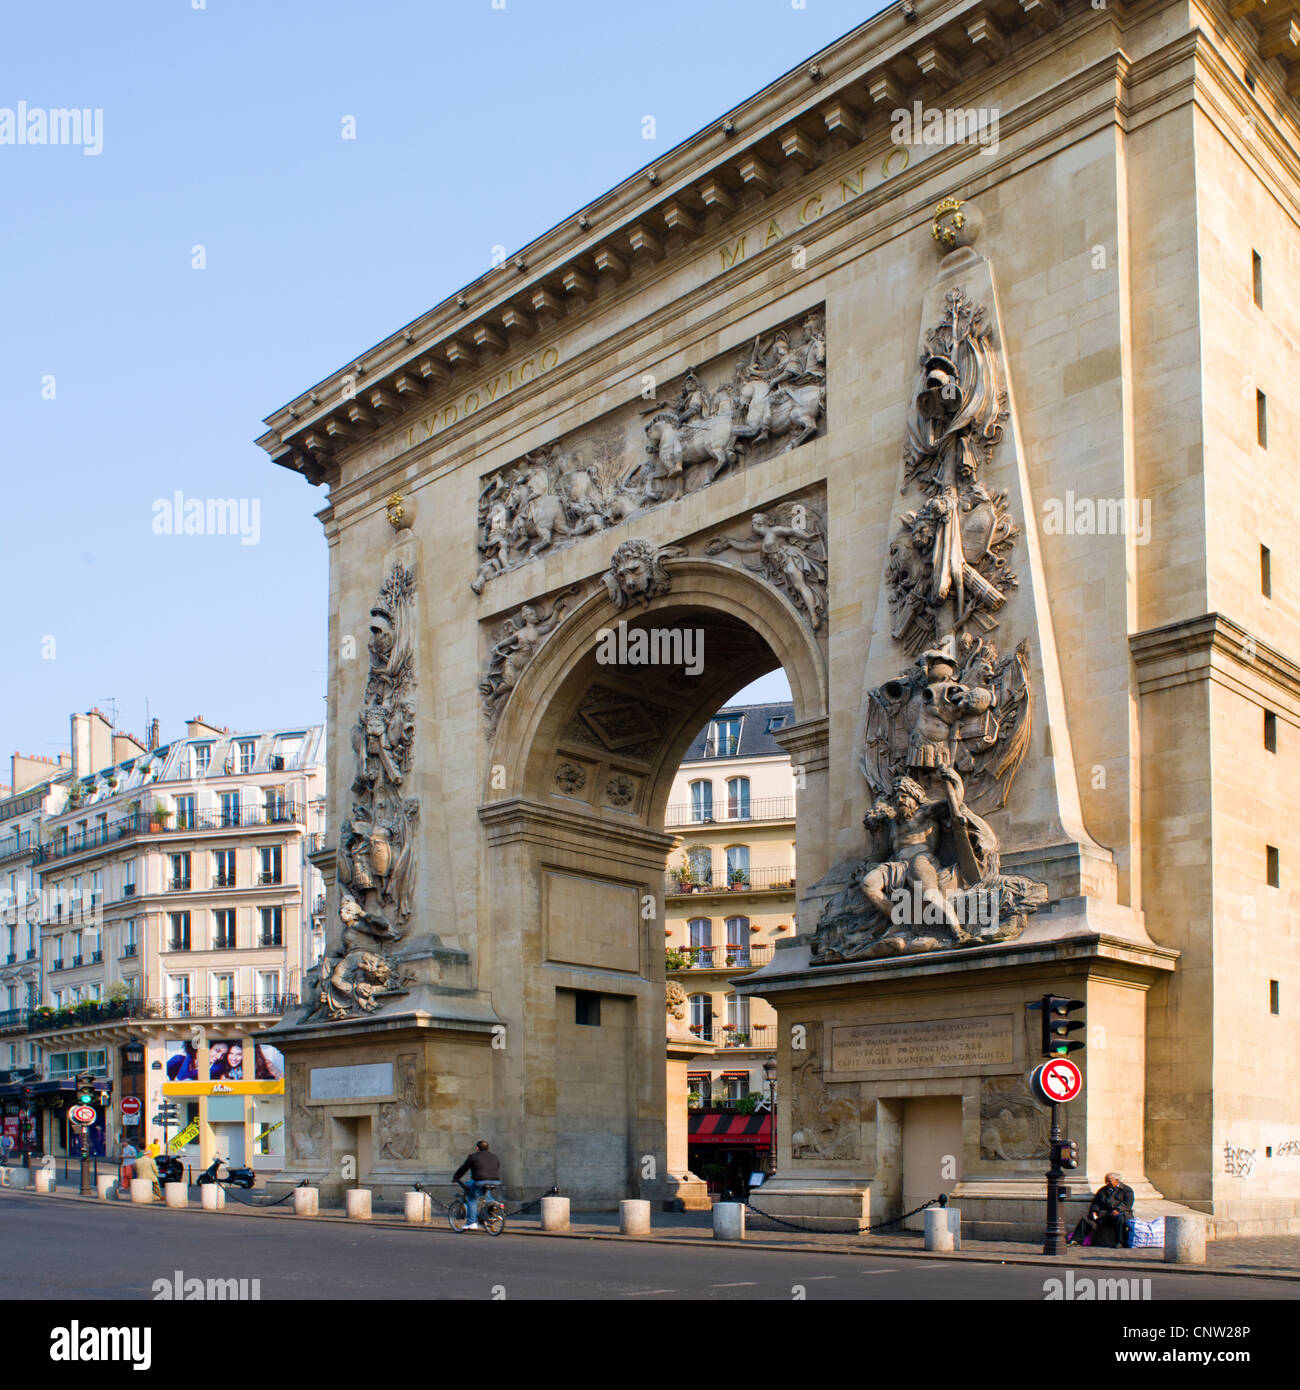 Porte St Denis arch, Paris France Stock Photo - Alamy